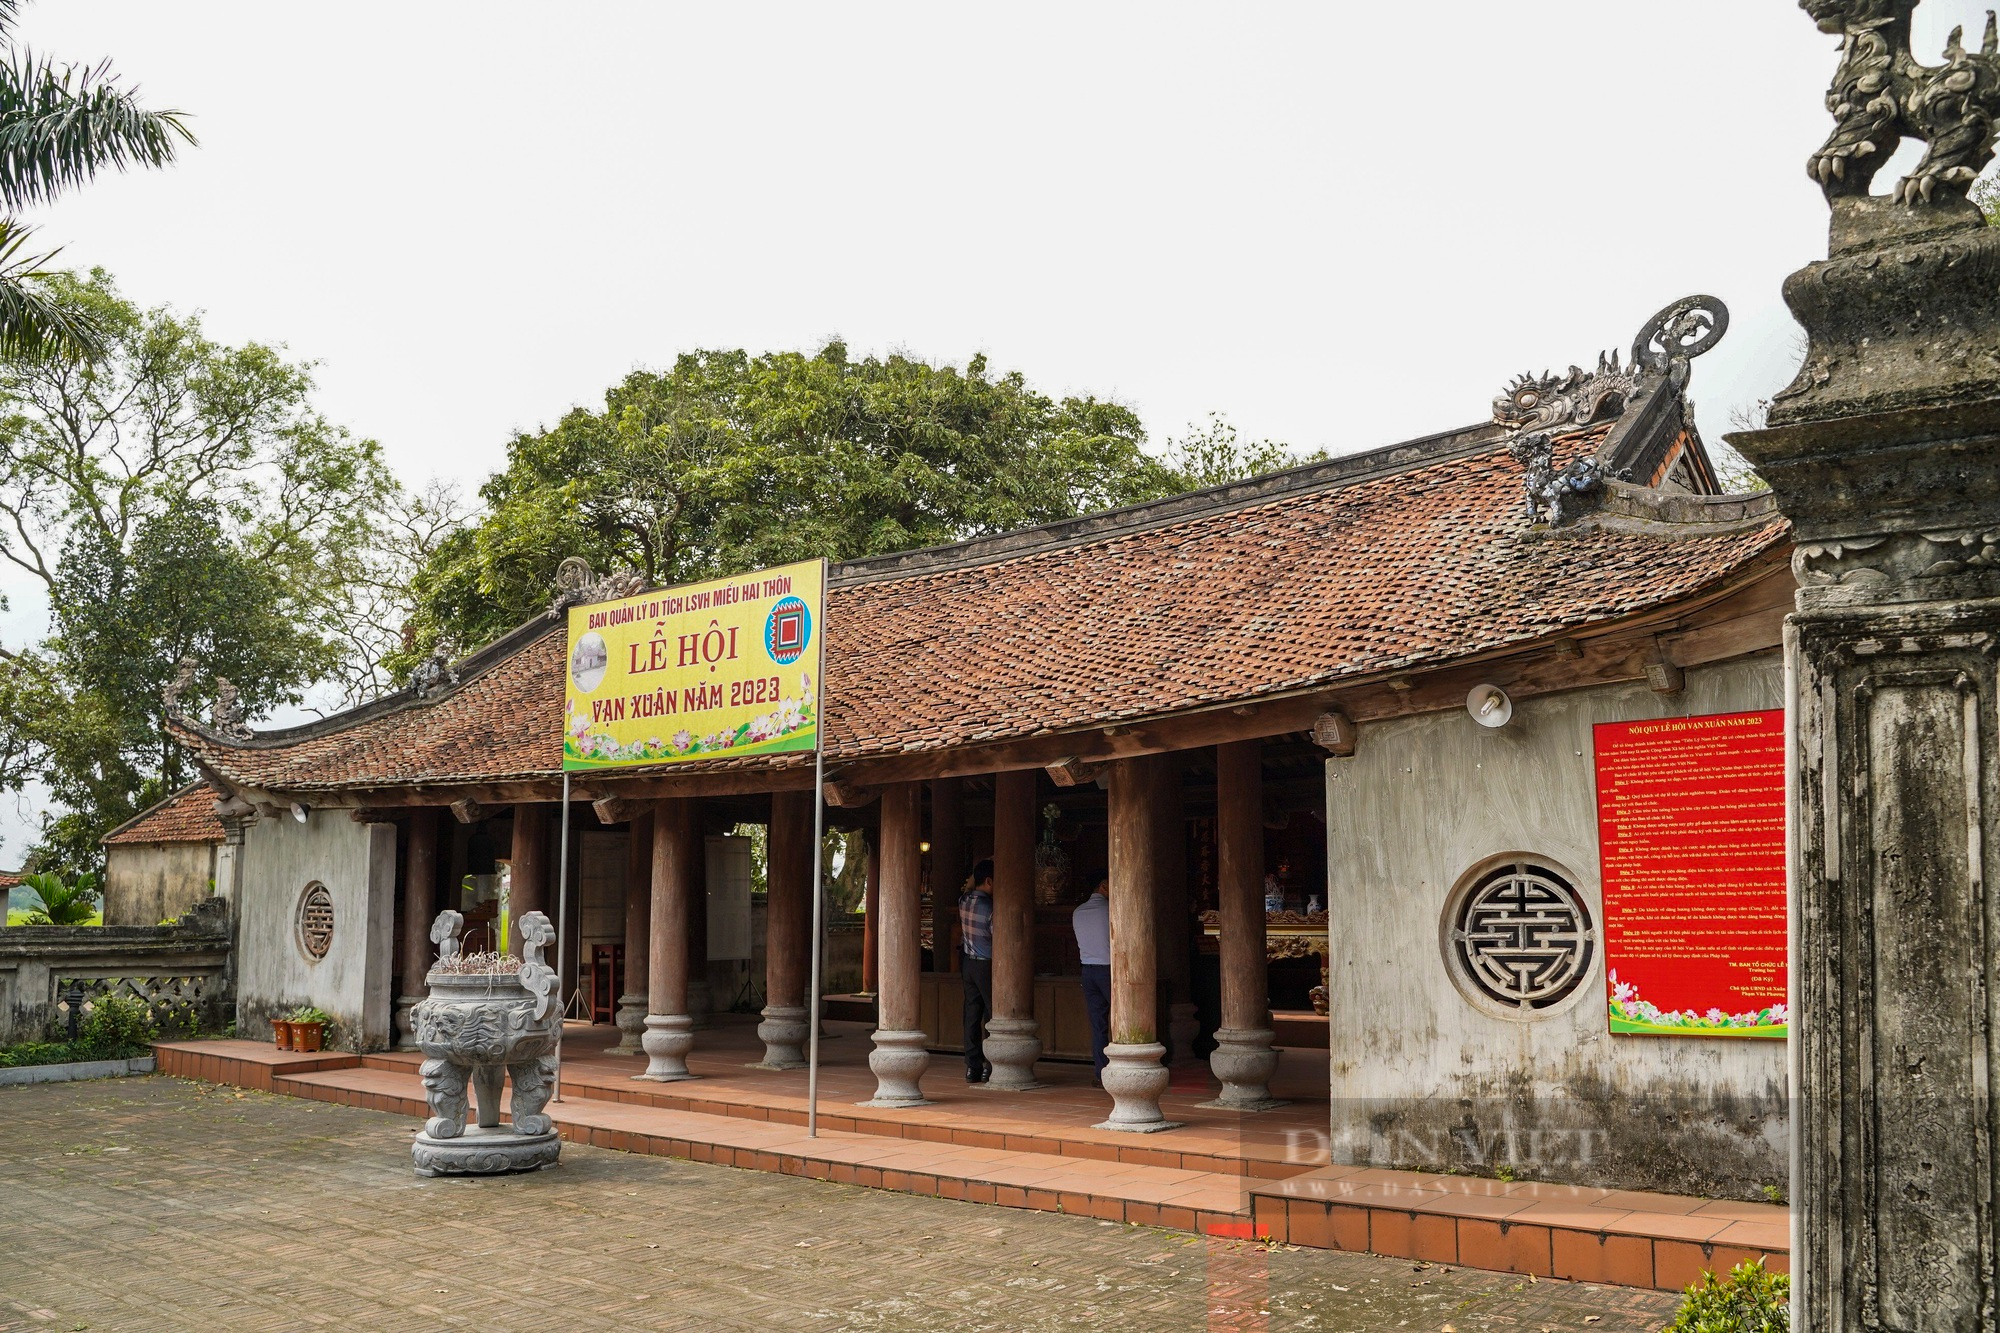 Ngai thờ sơn son thếp vàng 300 tuổi ở Thái Bình được công nhận là bảo vật quốc gia - Ảnh 2.